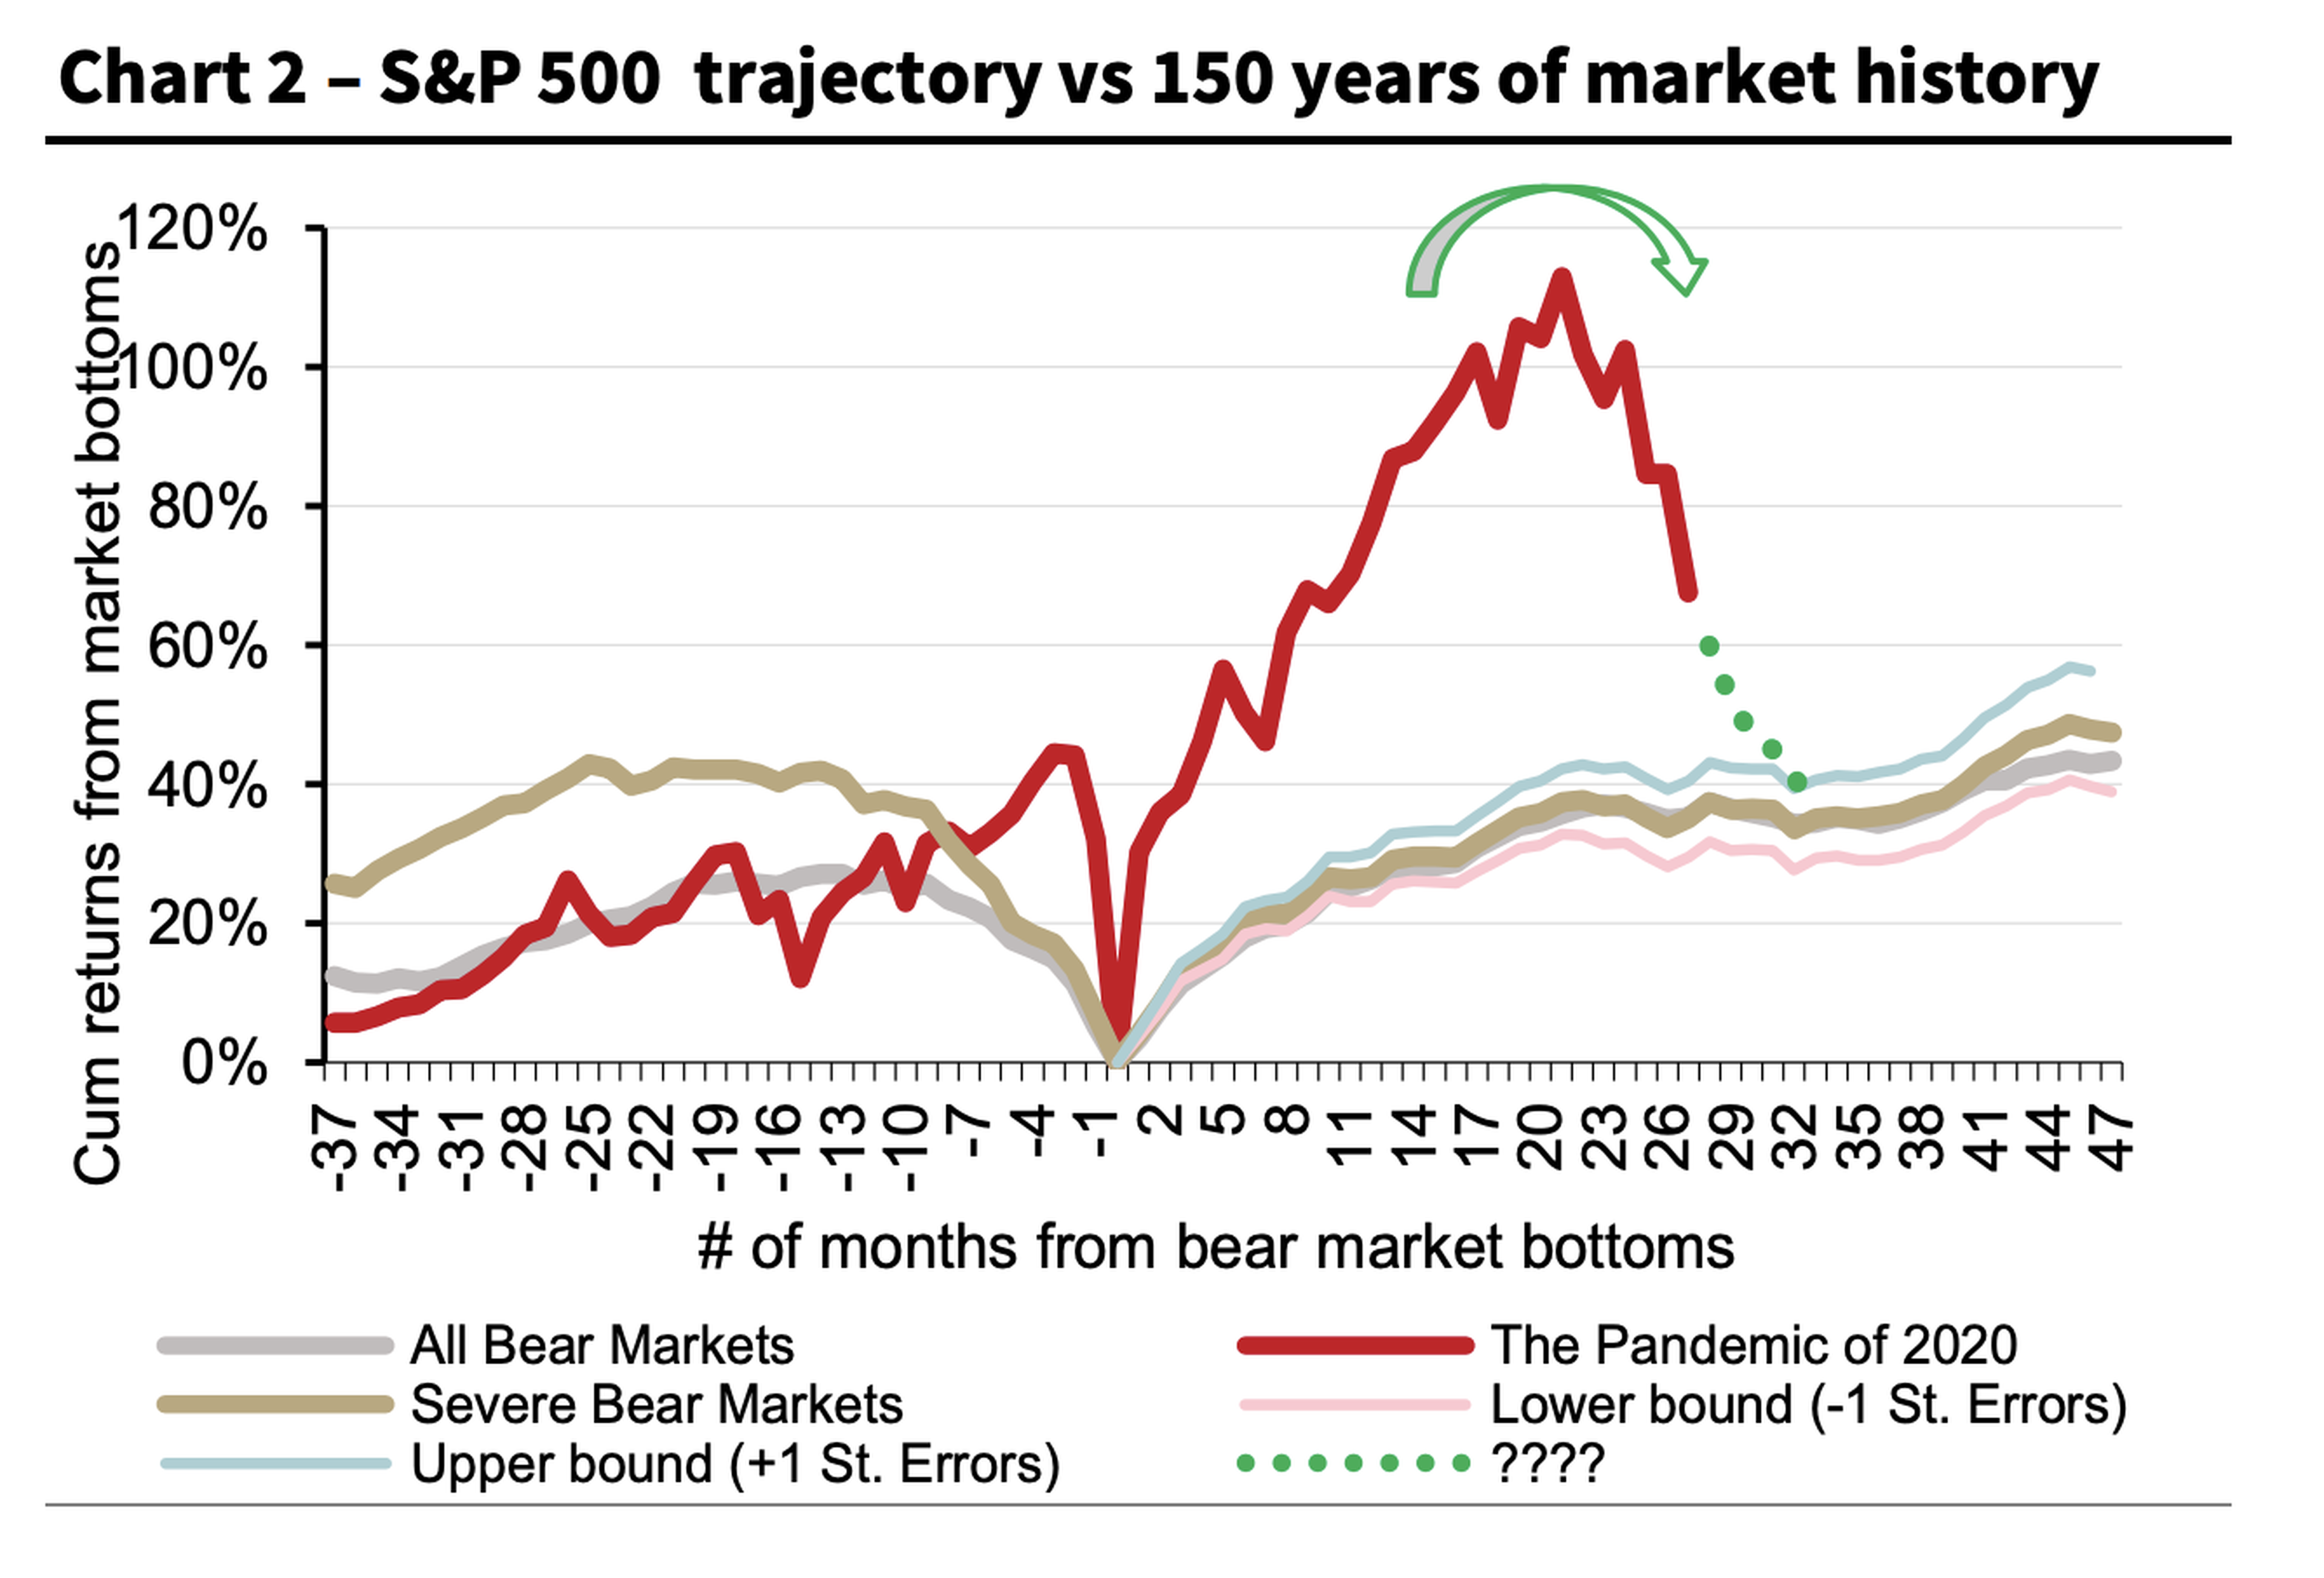 Trayectoria de S&P 500 versus 150 años de historia del mercado de valores. 